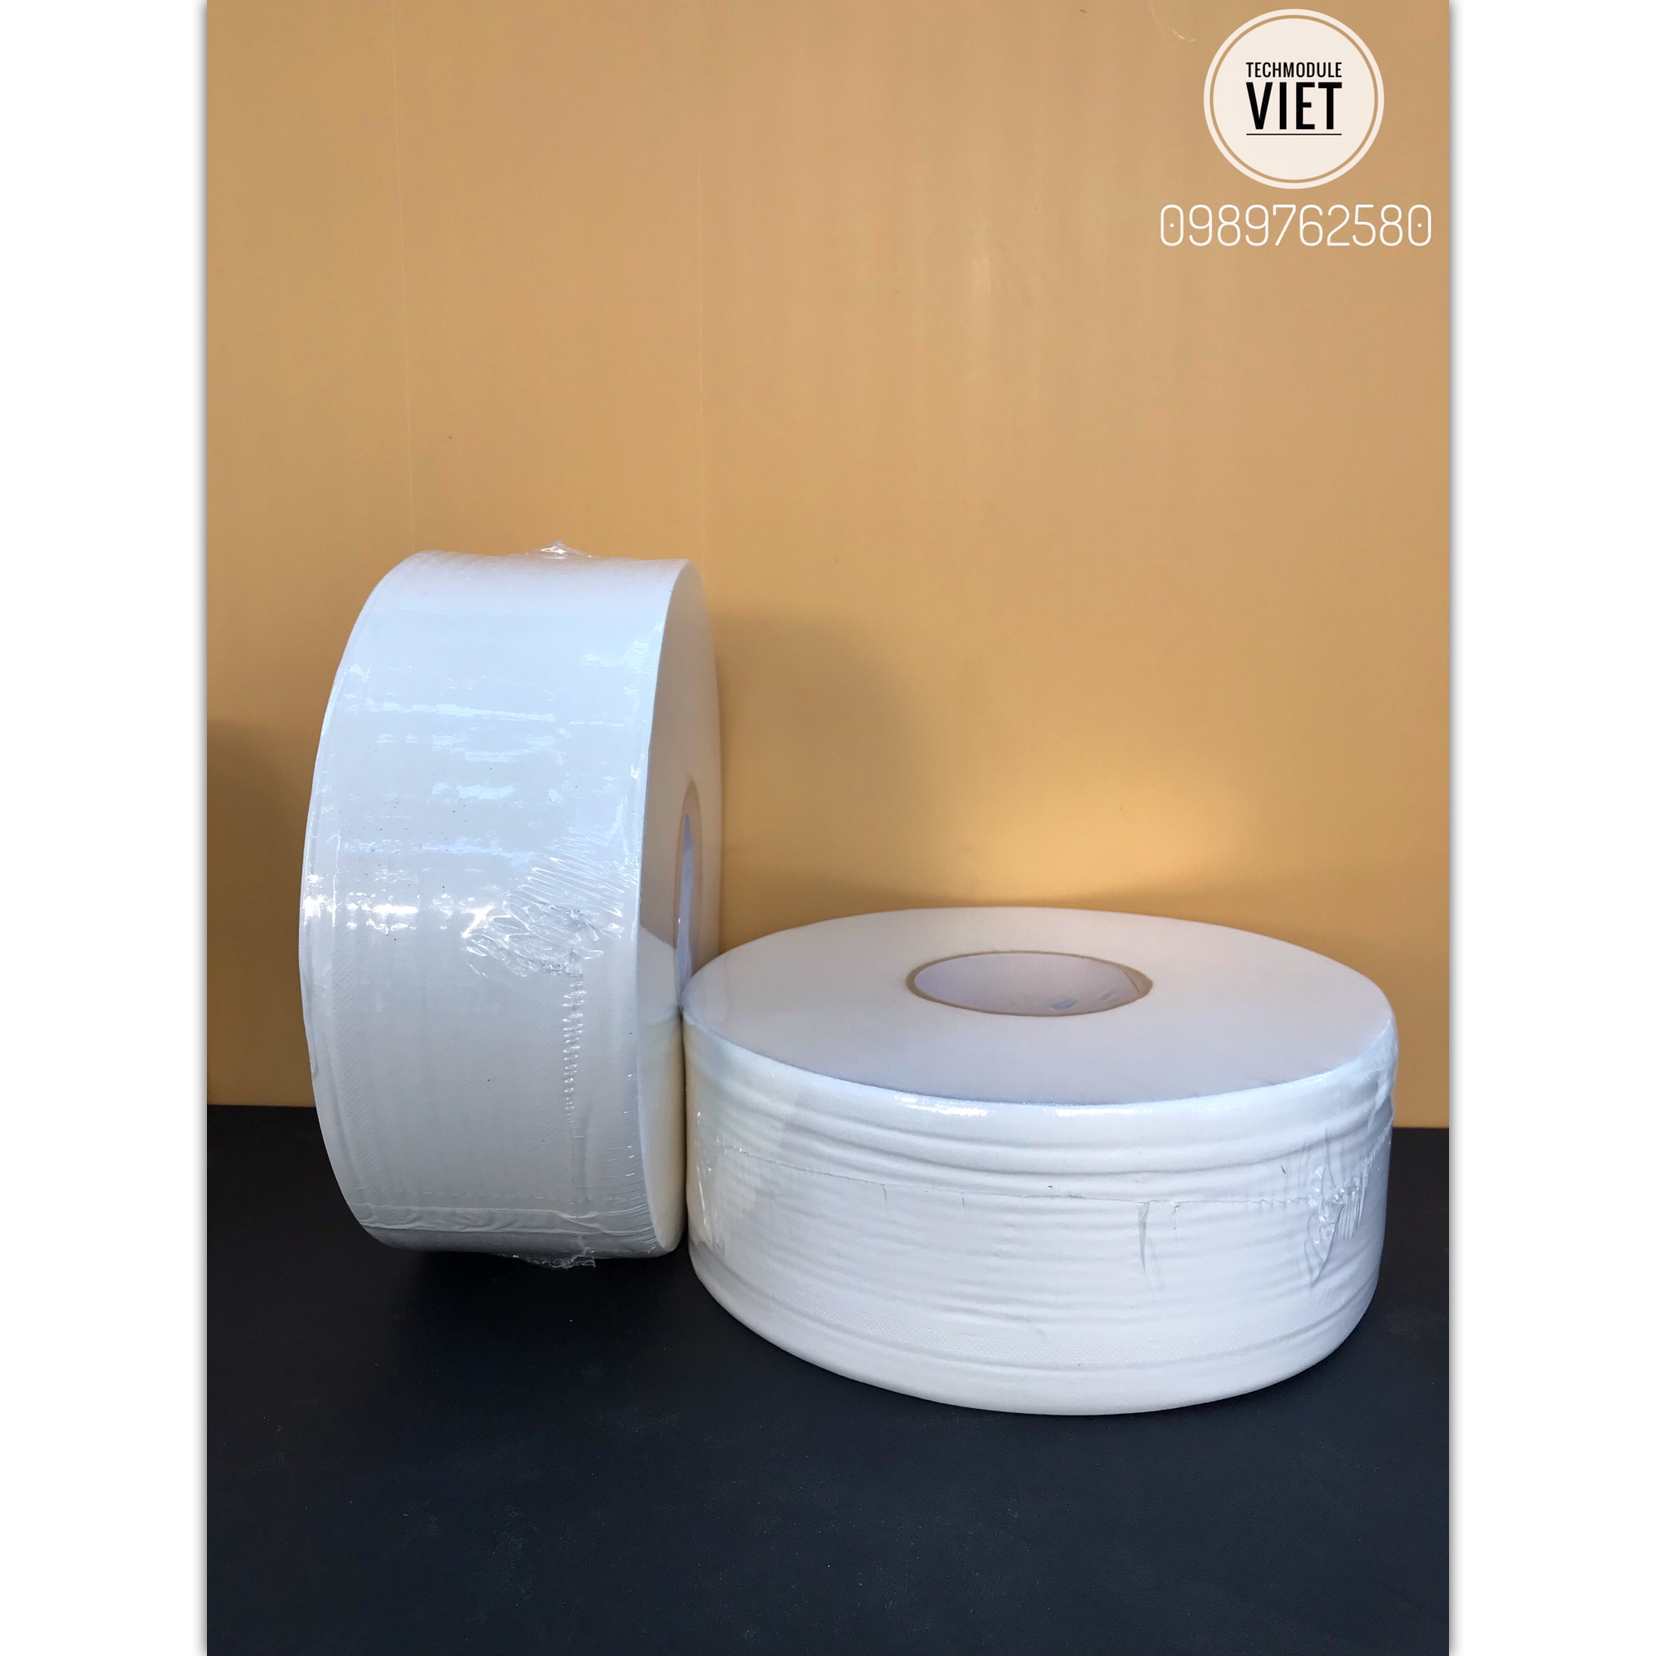 Trải nghiệm sản phẩm giấy vệ sinh cuộn lớn TMCARE từ Techmodule Việt